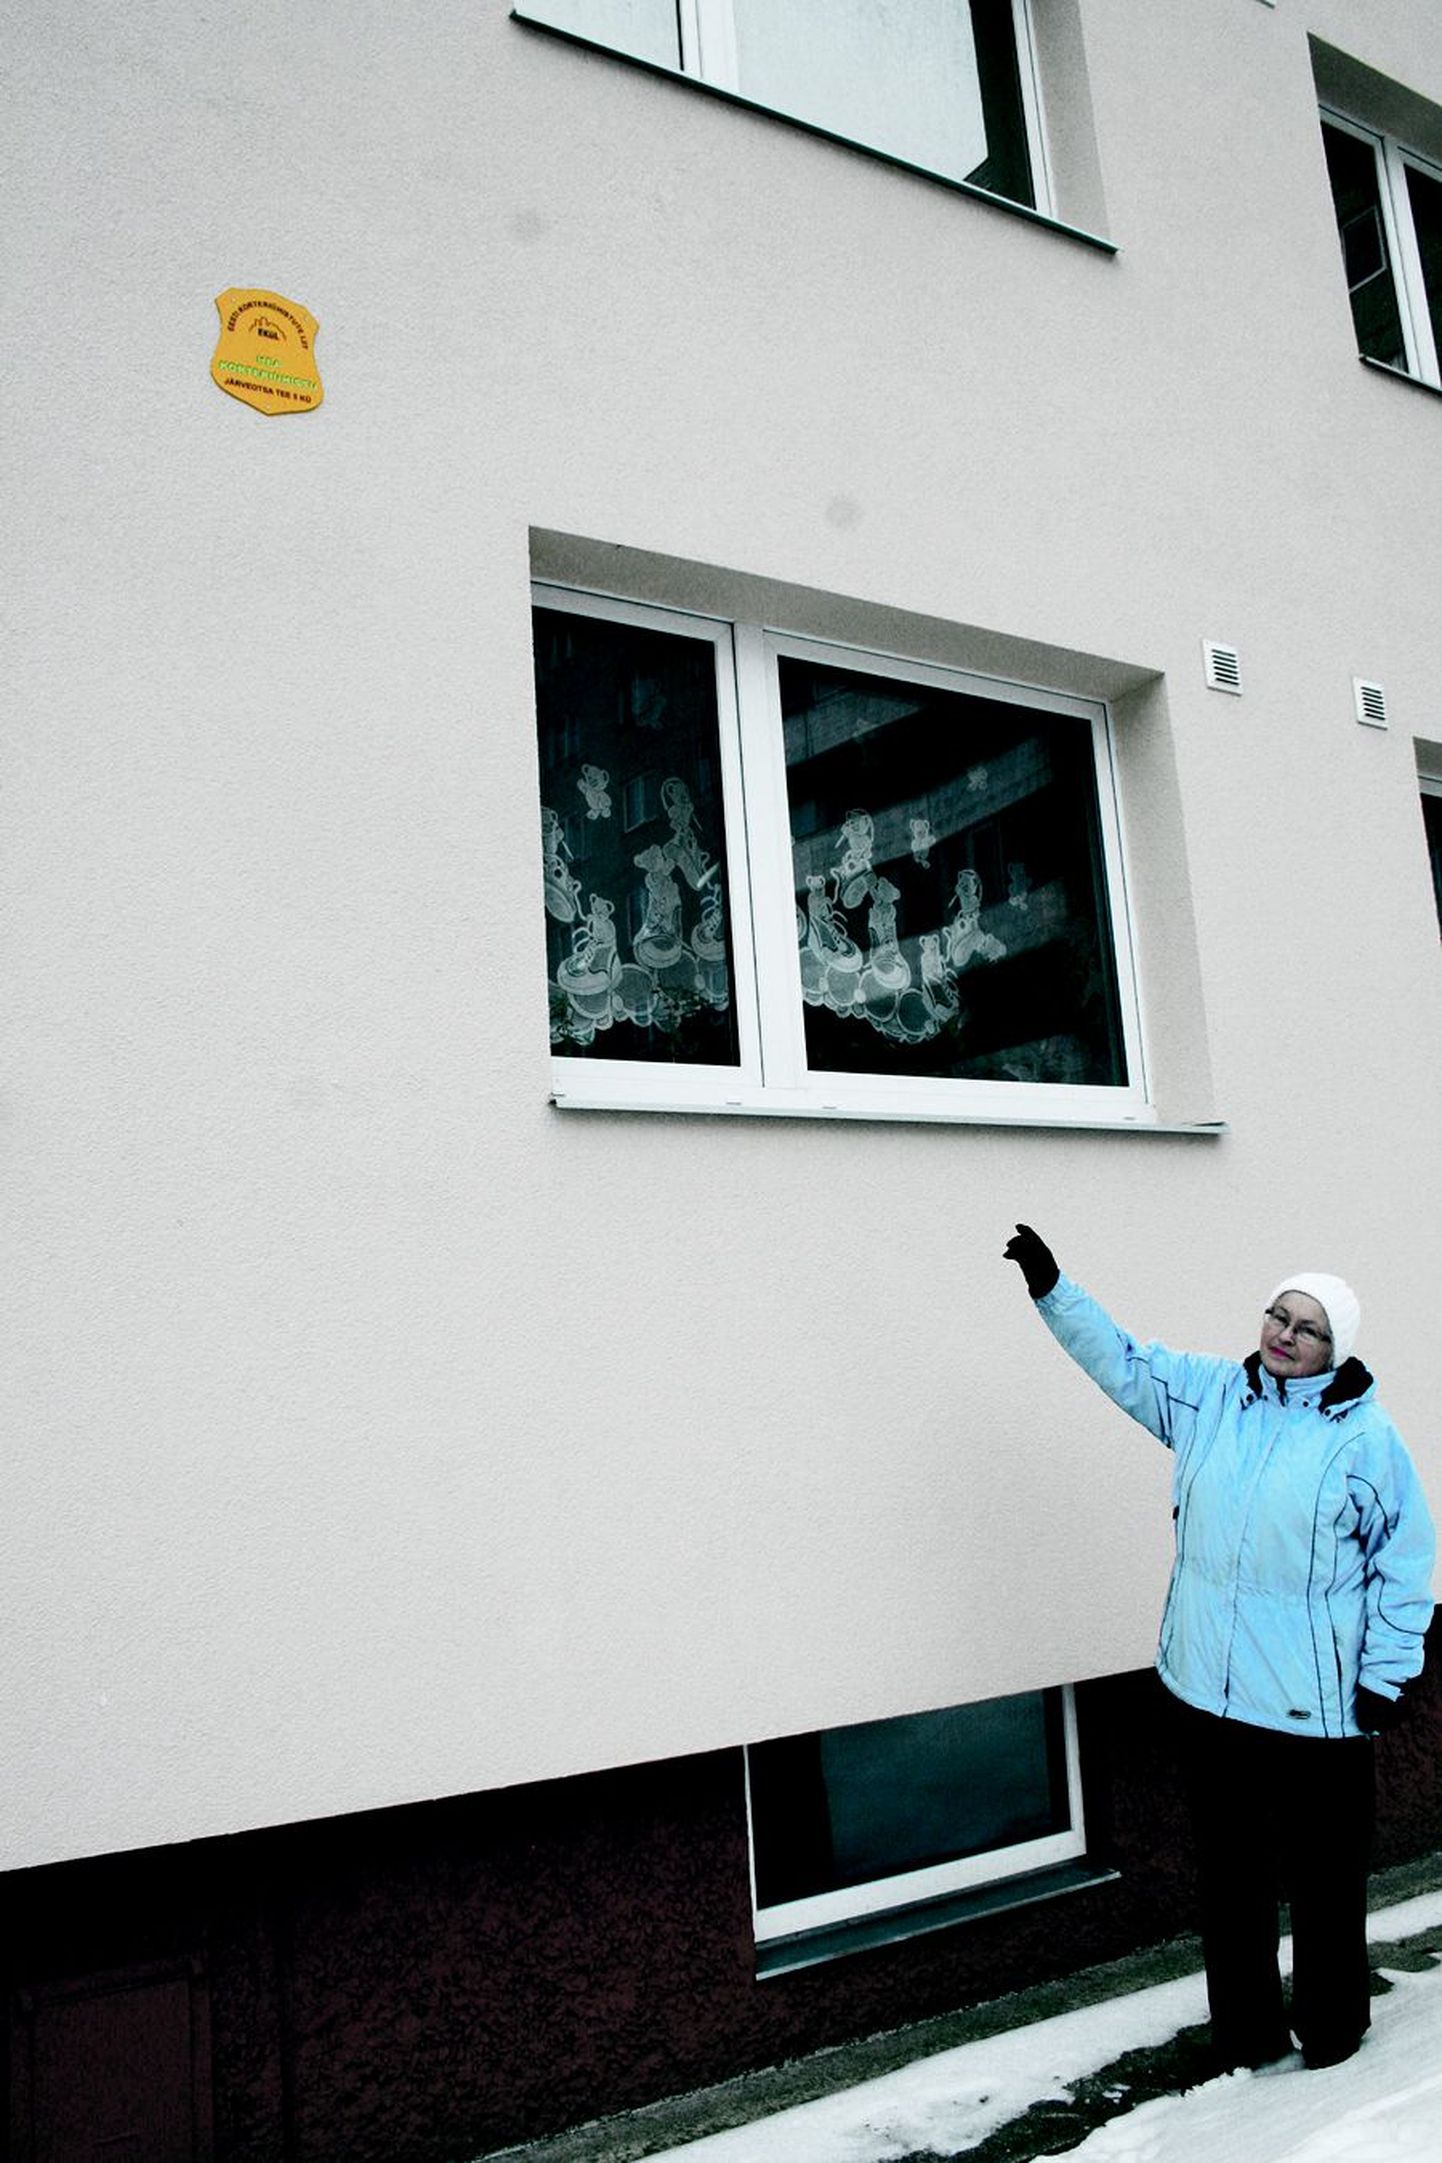 Õismäel Järveotsa tee 5 asuva korteriühistu juht Tiiu Varik näitab majale asetatud sertifikaati «Hea korteriühistu», mille nad kümneaastasele korteriühistule peale põhjalikke renoveerimisi ja auditeerimisi välja teenisid.